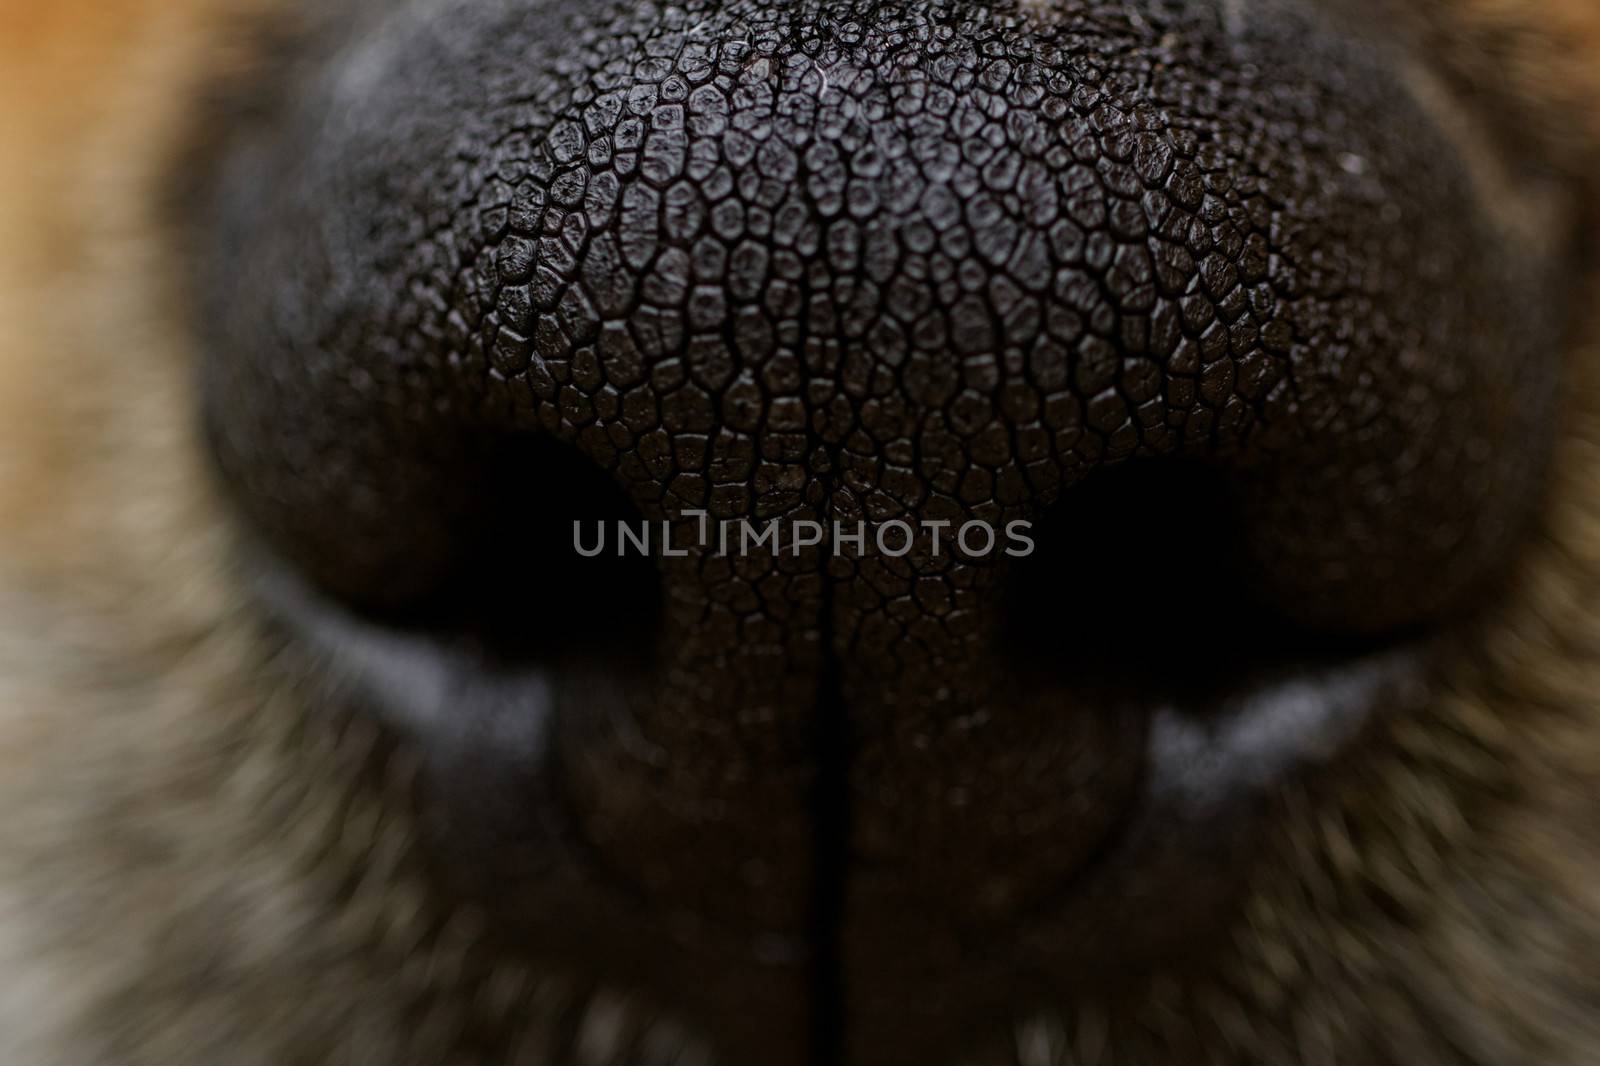 dog's nose by NagyDodo